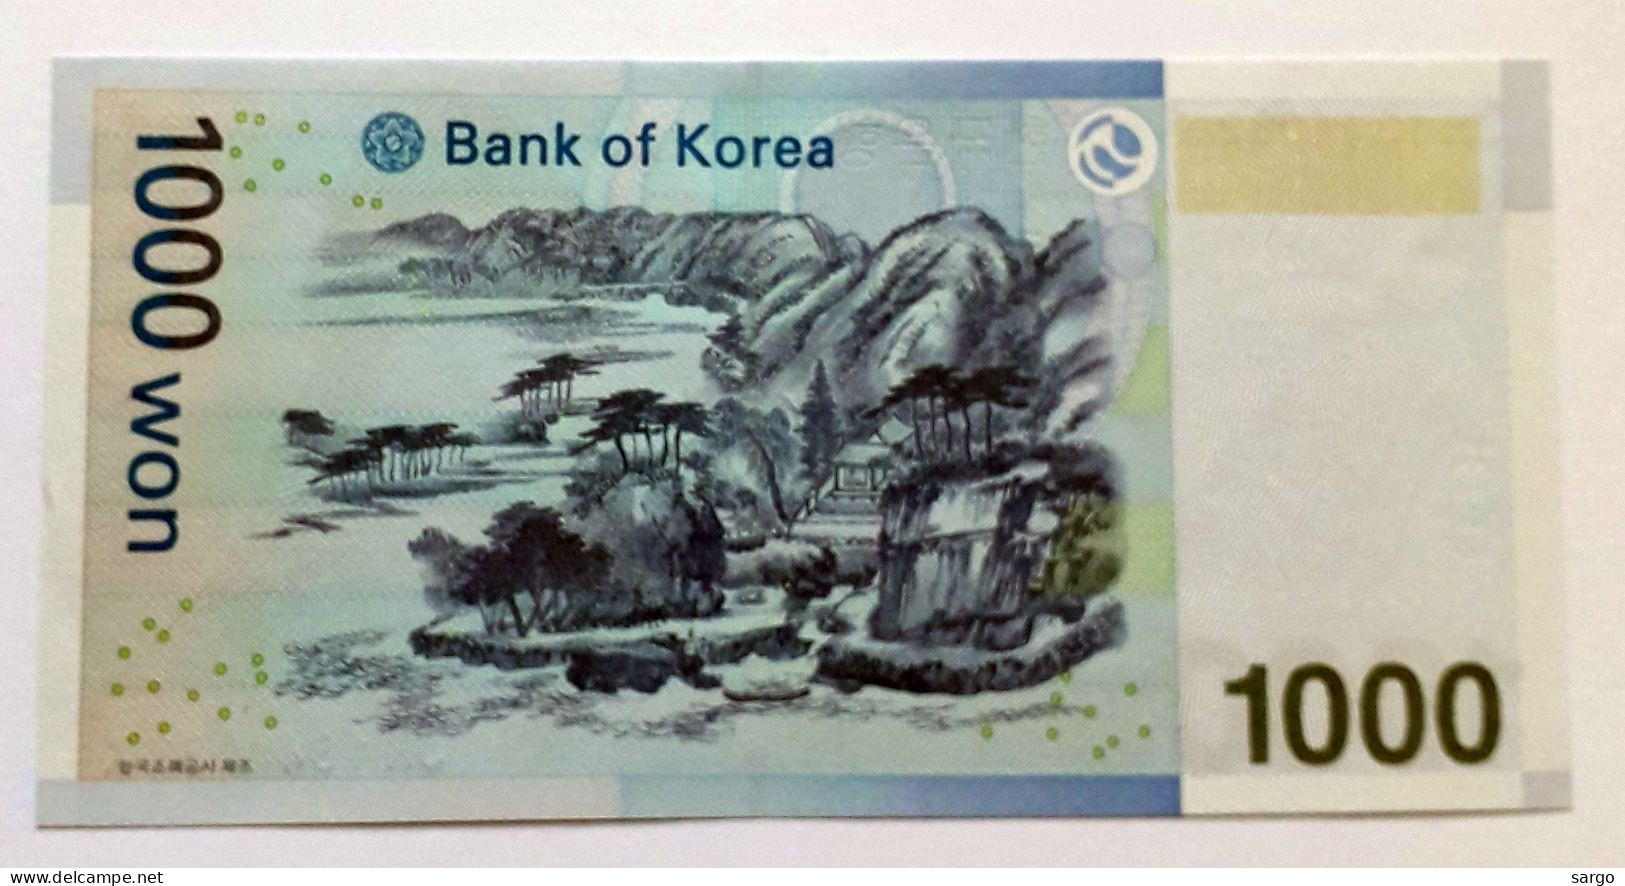 SOUTH KOREA - 1.000 WON  - 2007  - UNC - P 54 - BANKNOTES - PAPER MONEY - CARTAMONETA - - Corea Del Sur